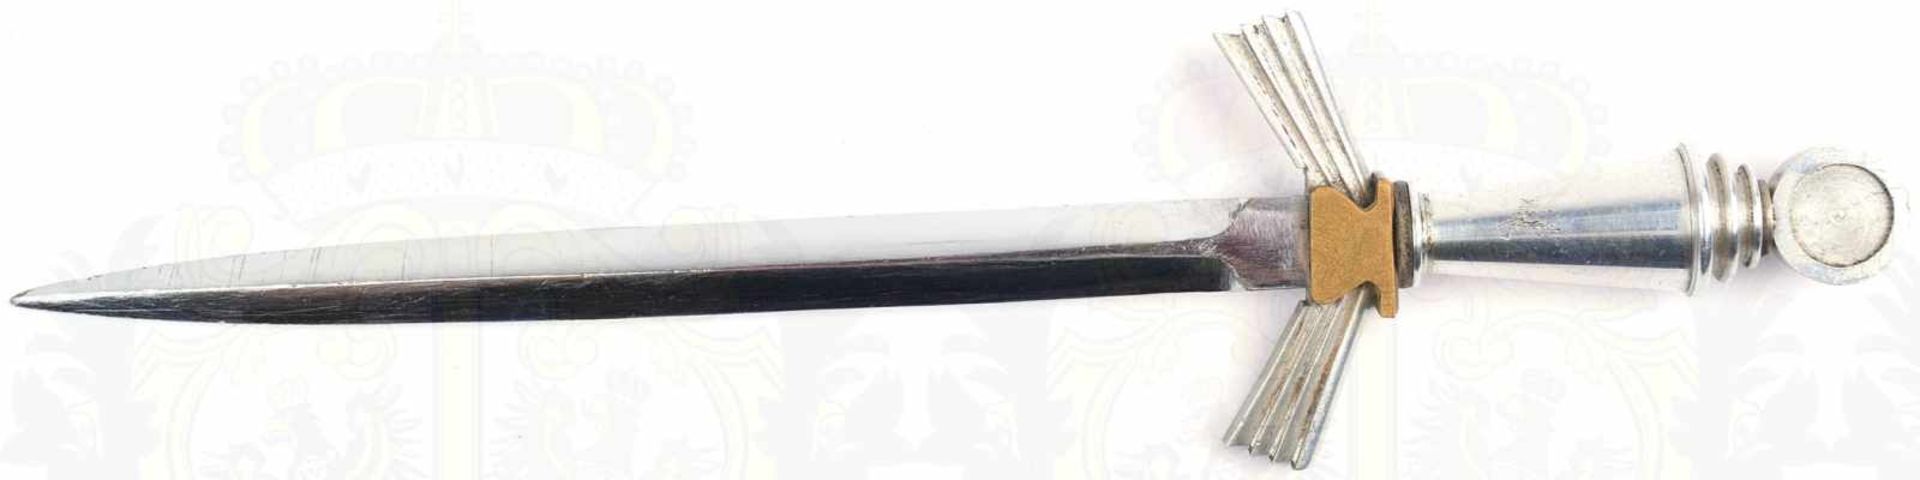 BRIEFÖFFNER, blanke zweischneidige Klinge, L. 14cm, Griffteile Weißmetall/Tombak, vernickelte - Bild 3 aus 3